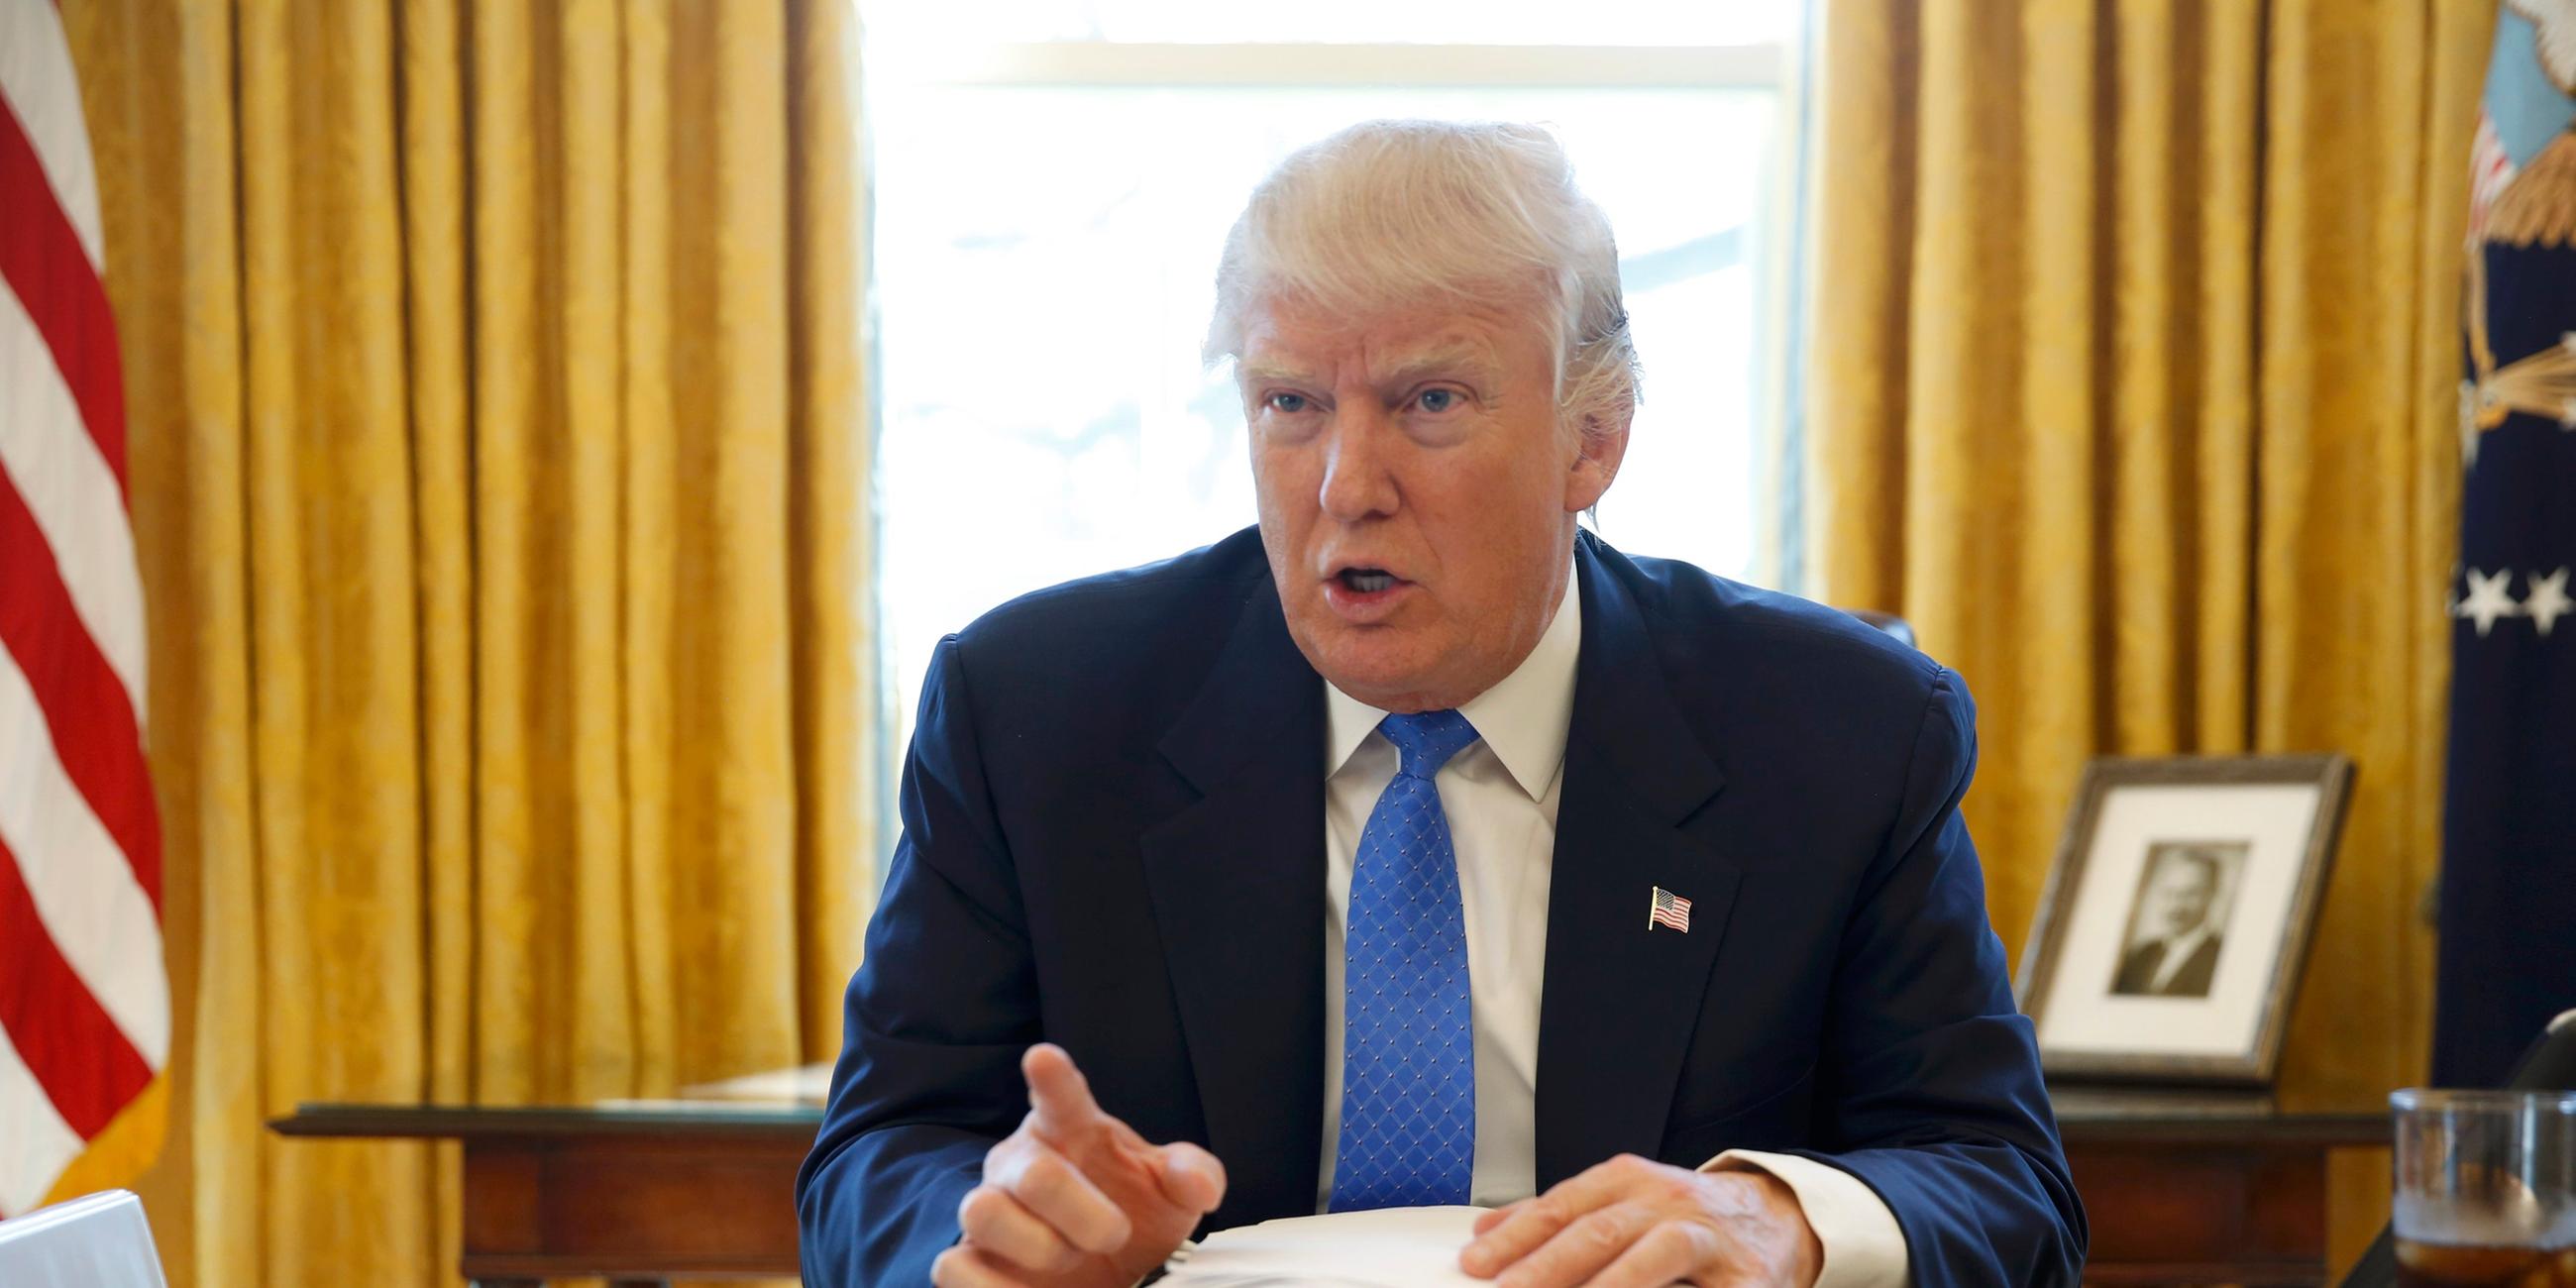 Donald Trump sitzt im Oval Office hinter dem großen Schreibtisch und zeigt mit erhobenem Zeigefinger in Richtung Kamera.